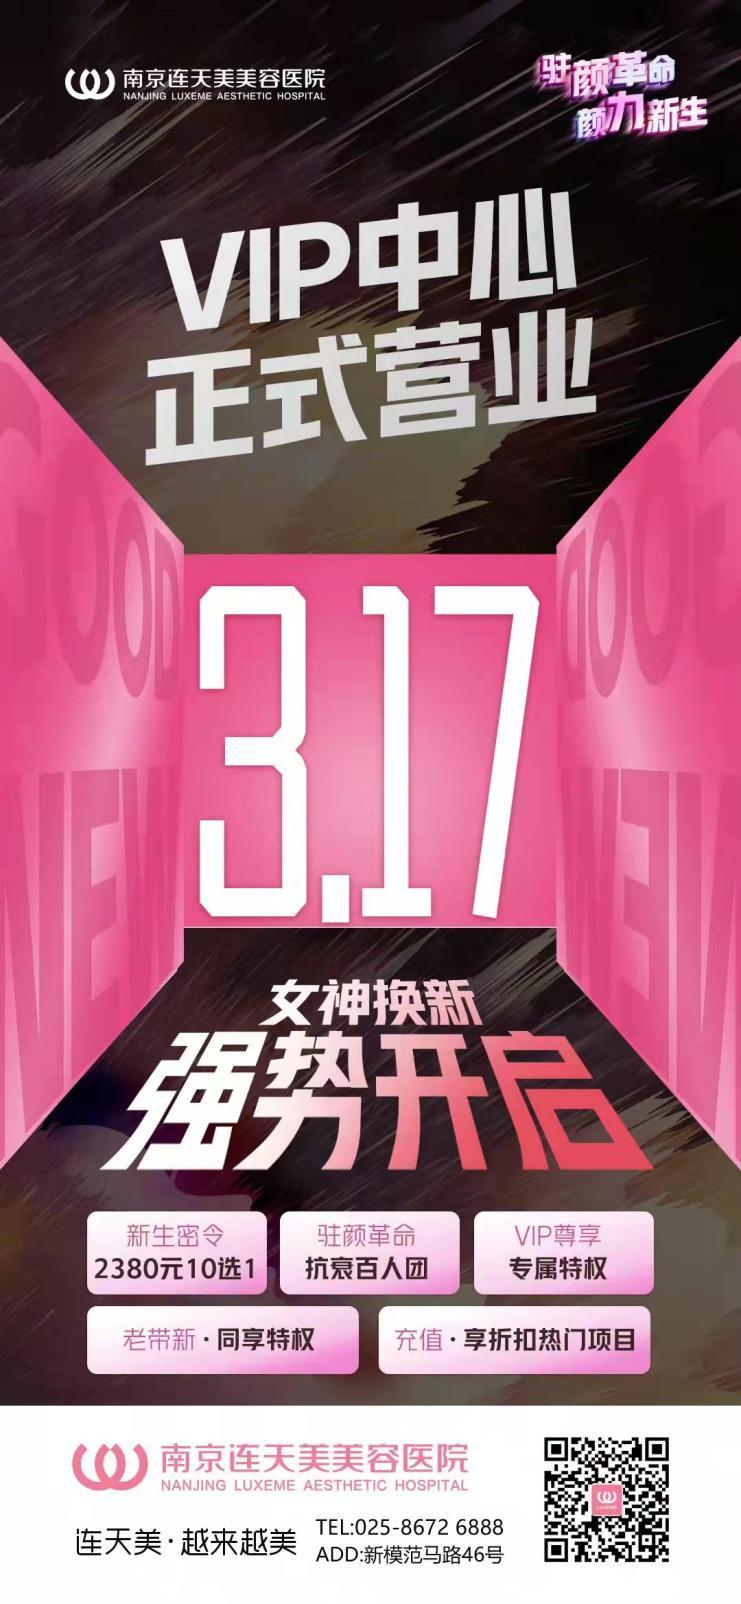 南京连天美VIP中心正式营业（日期3.17），收费透明